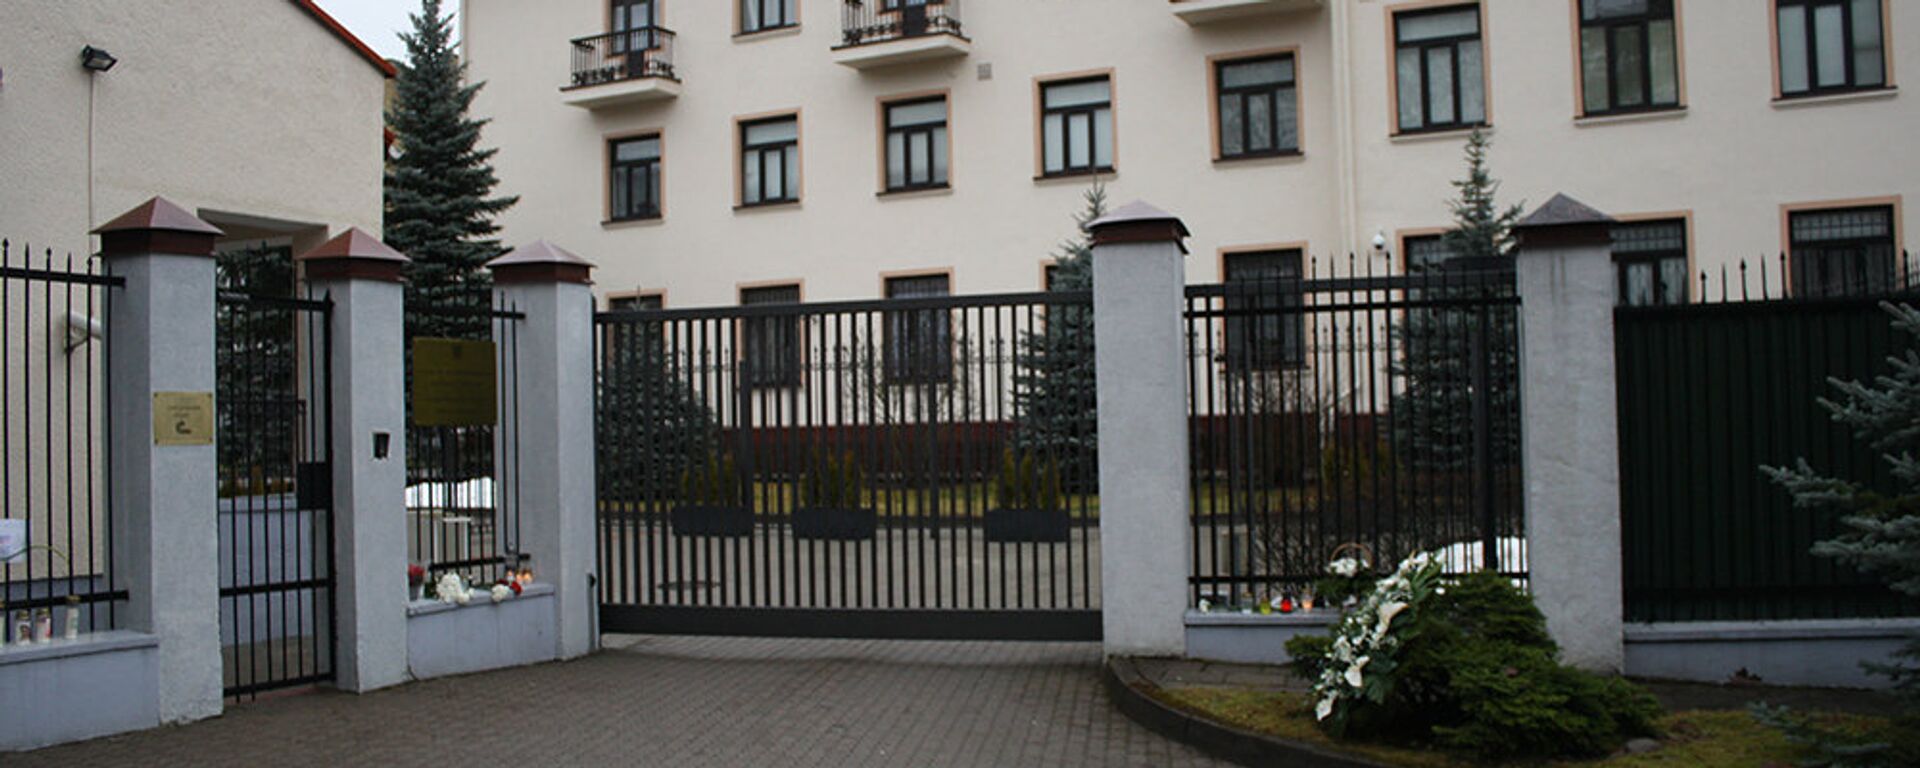 Въезд в посольство России в Литве - Sputnik Lietuva, 1920, 29.04.2021